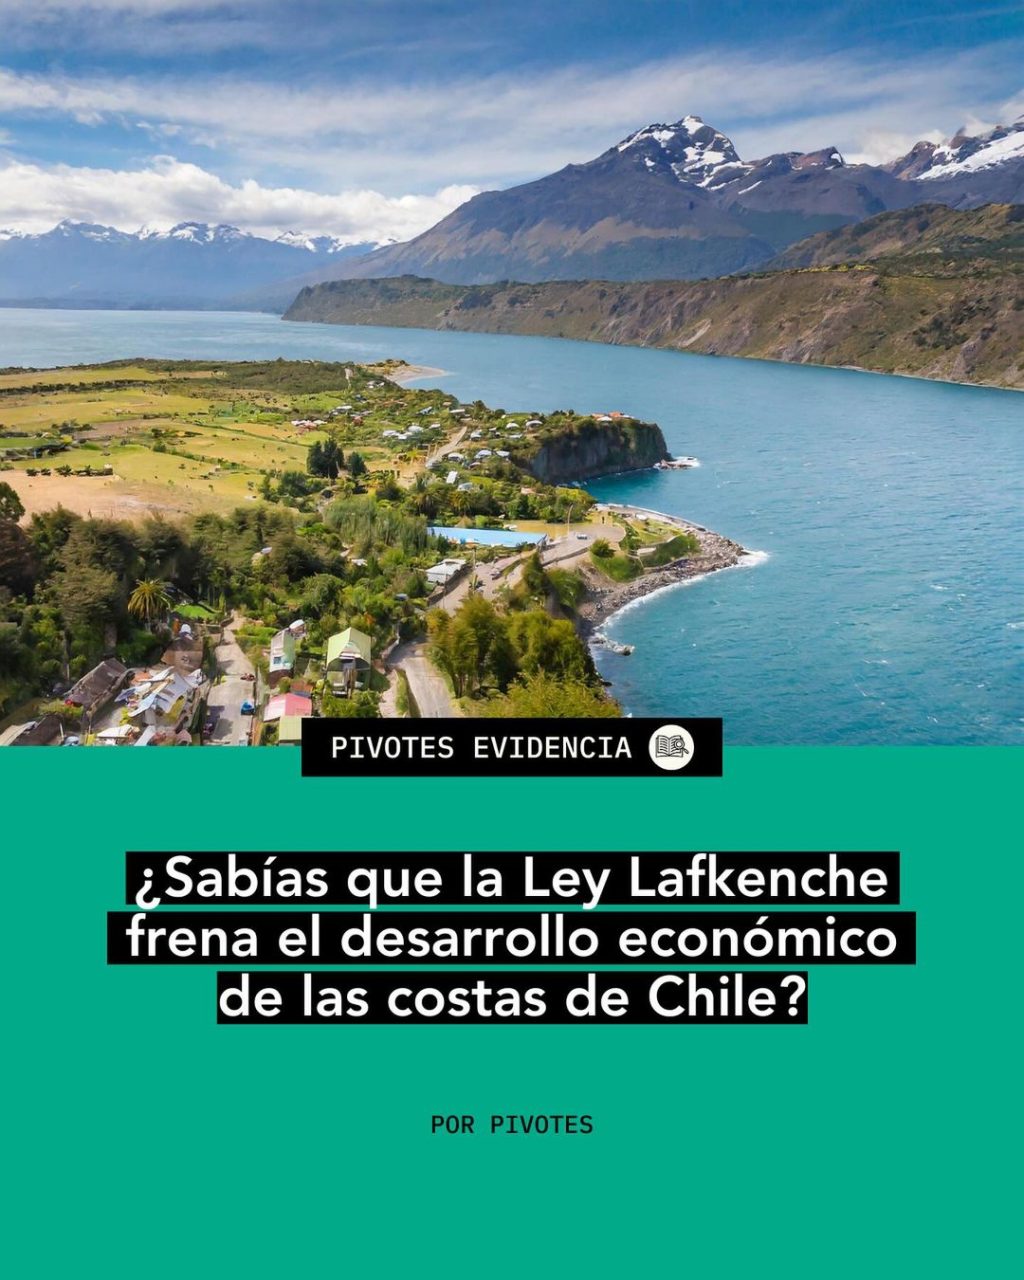 ¿Sabías que la Ley Lafkenche frena el desarrollo económico de las costas de Chile?